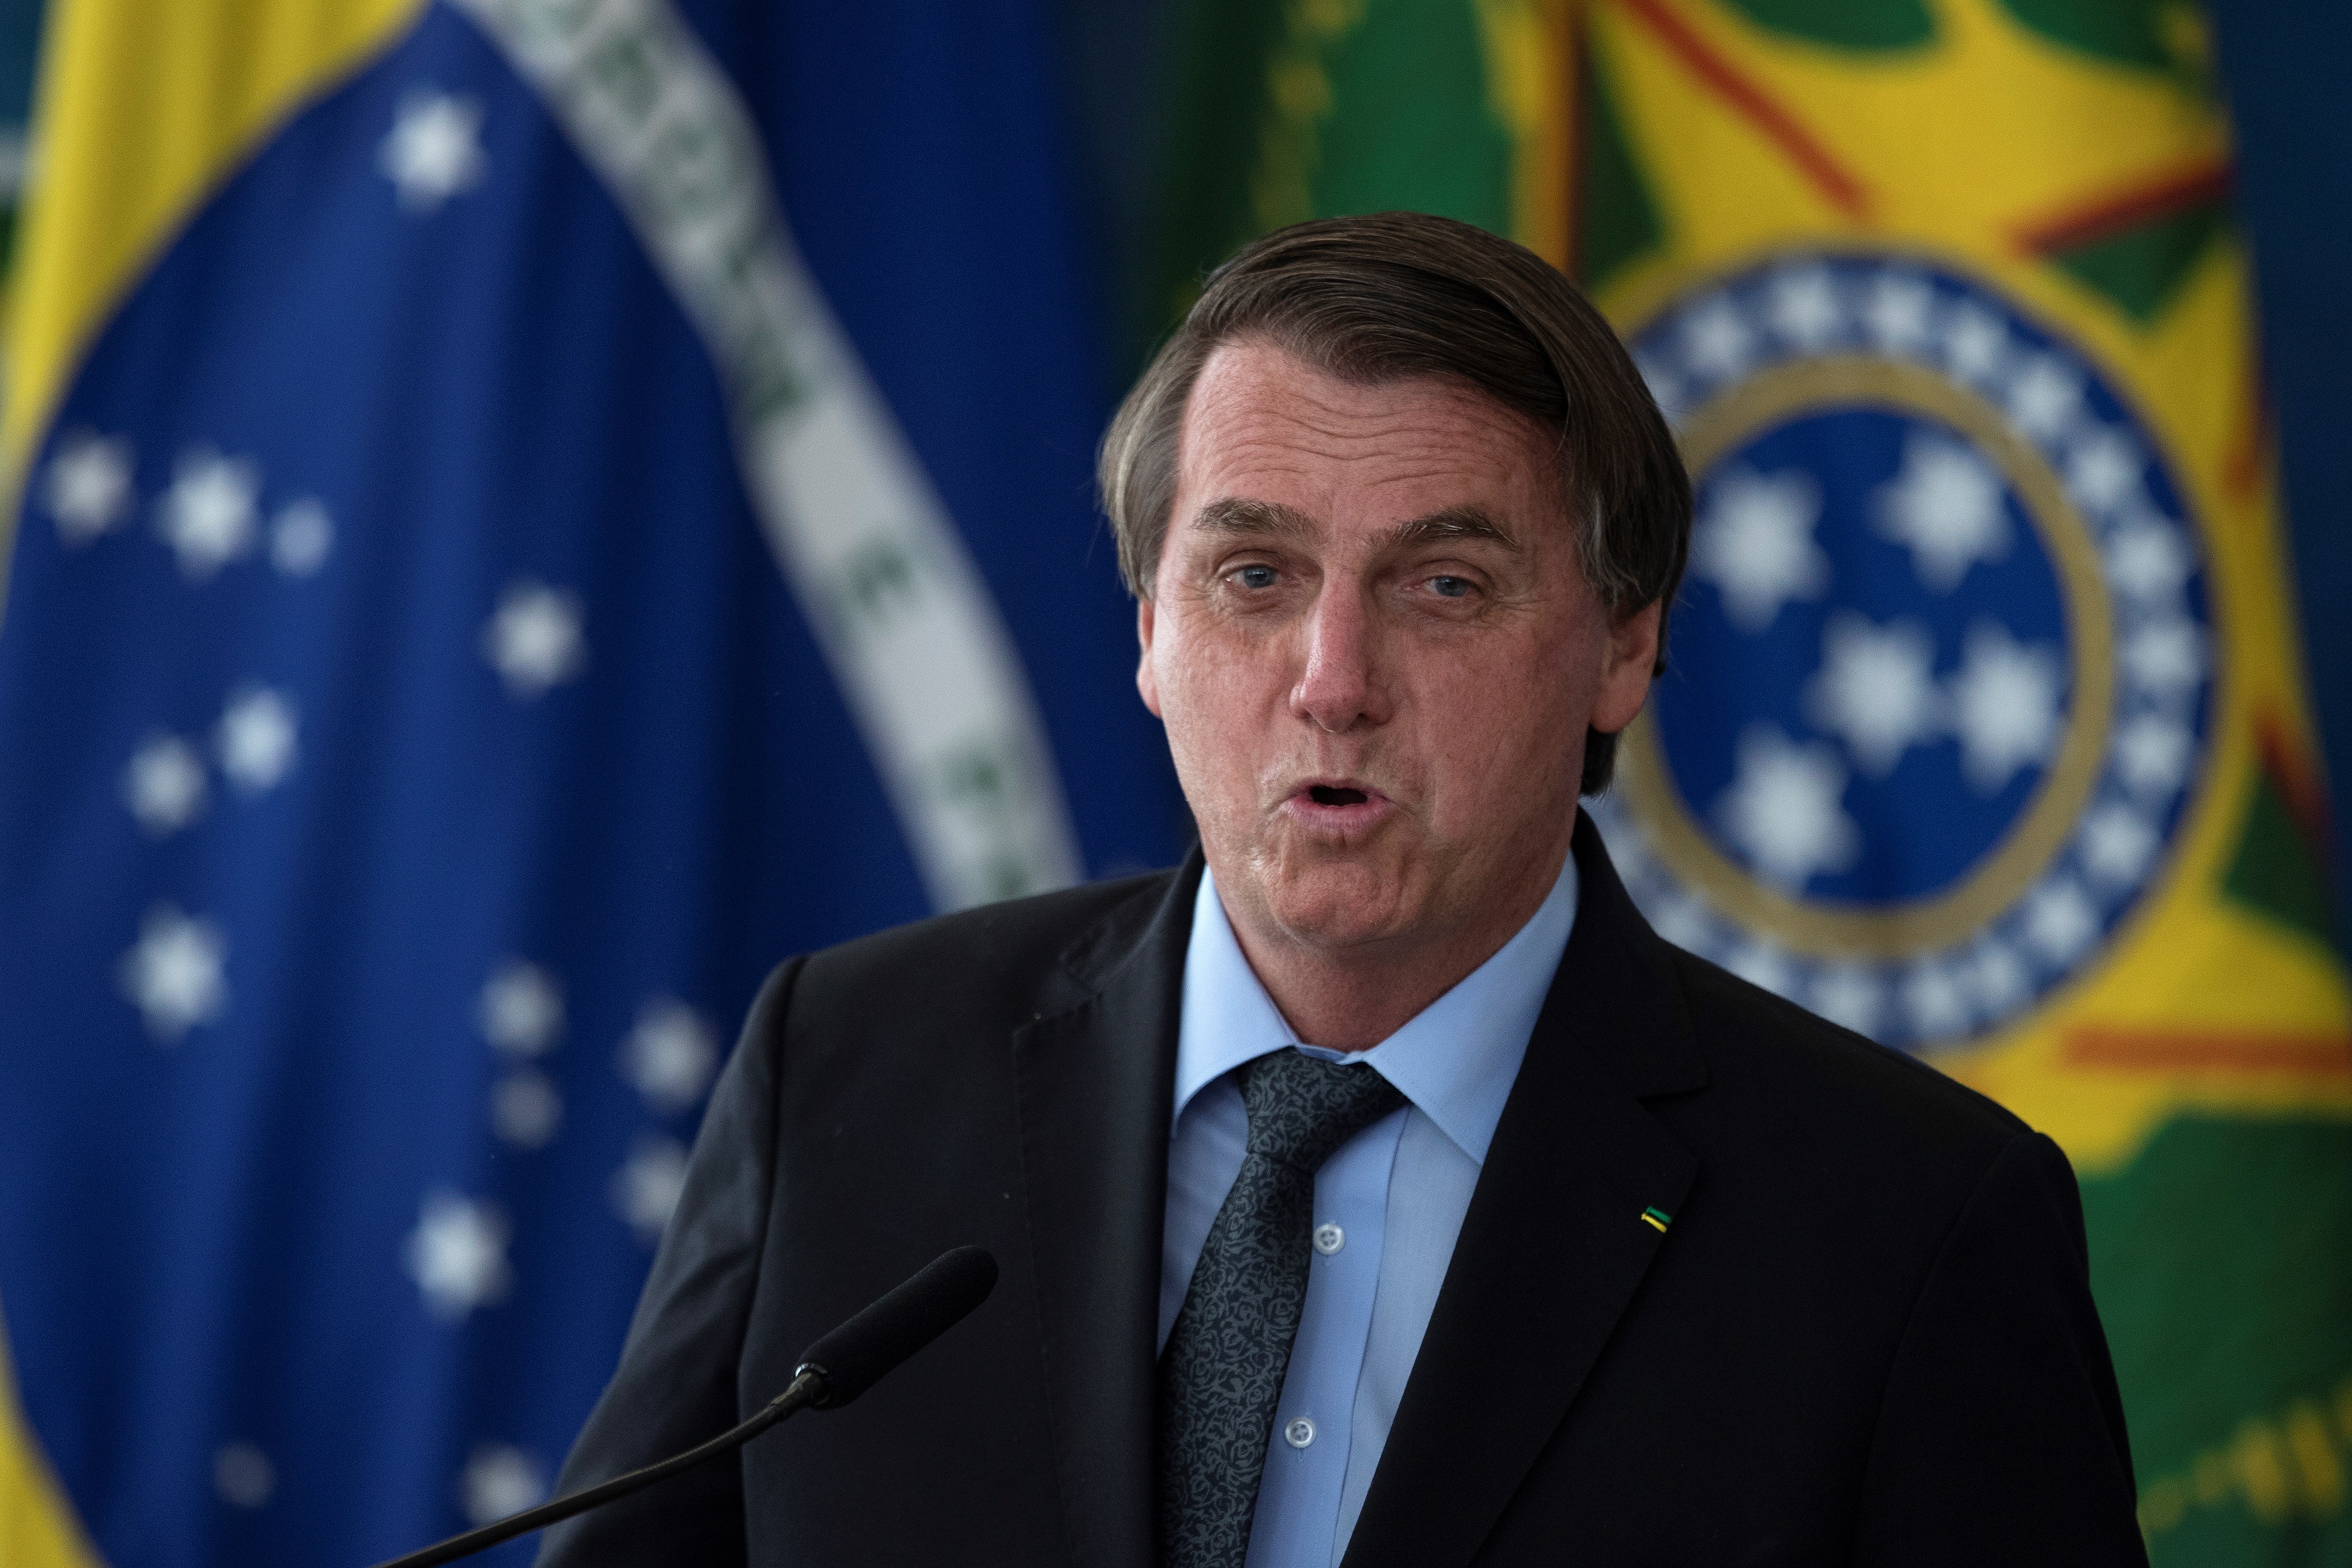 Bolsonaro, hospitalizado de urgencia por una posible obstrucción intestinal